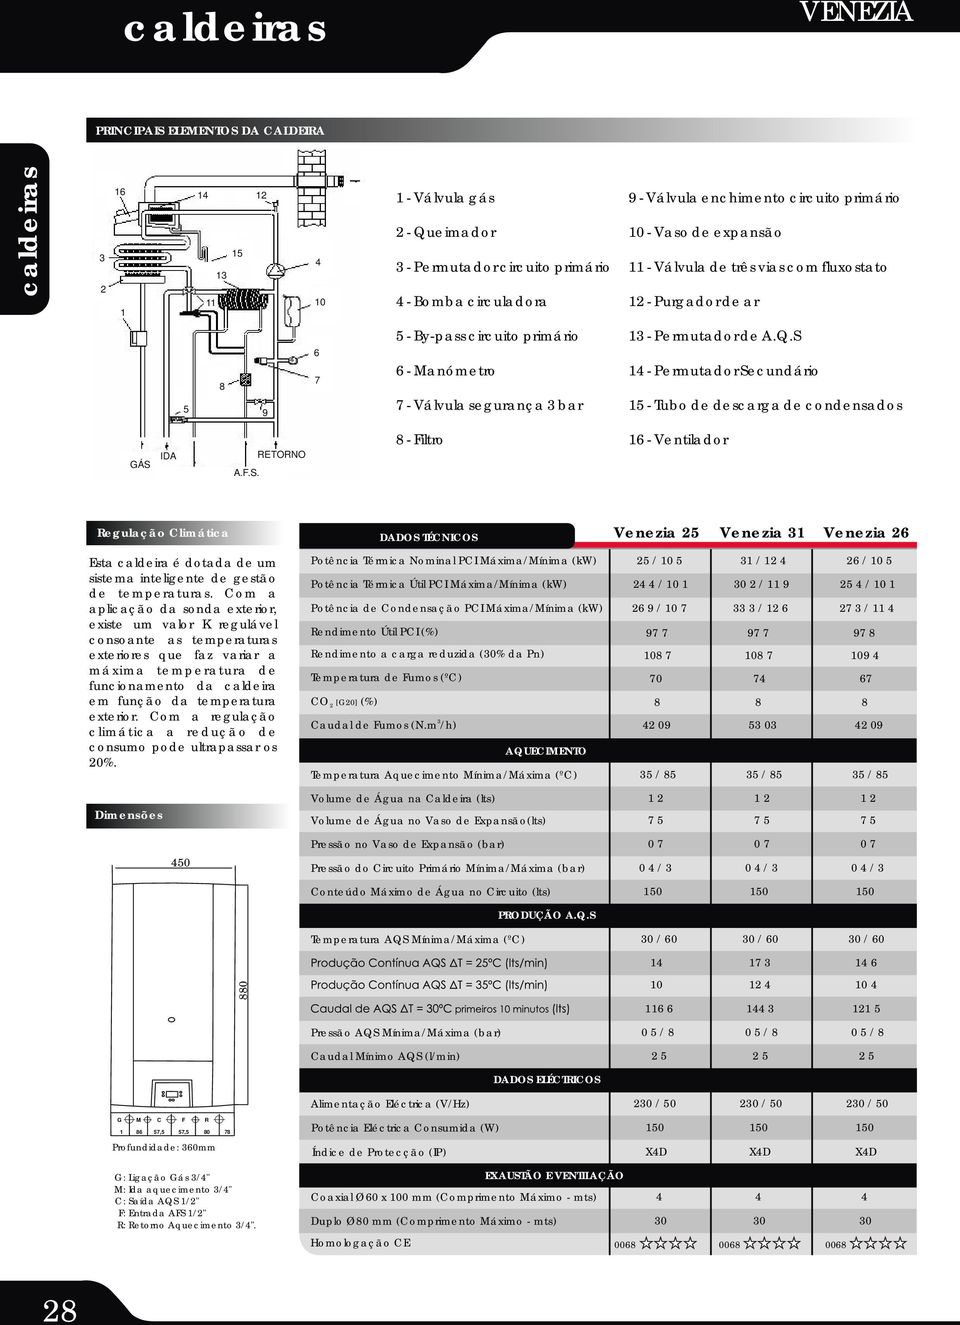 S 14 - Permutador Secundário 15 - Tubo de descarga de condensados RETORNO 8 - Filtro 16 - Ventilador GÁS IDA A.F.S. Regulação Climática Esta caldeira é dotada de um sistema inteligente de gestão de temperaturas.